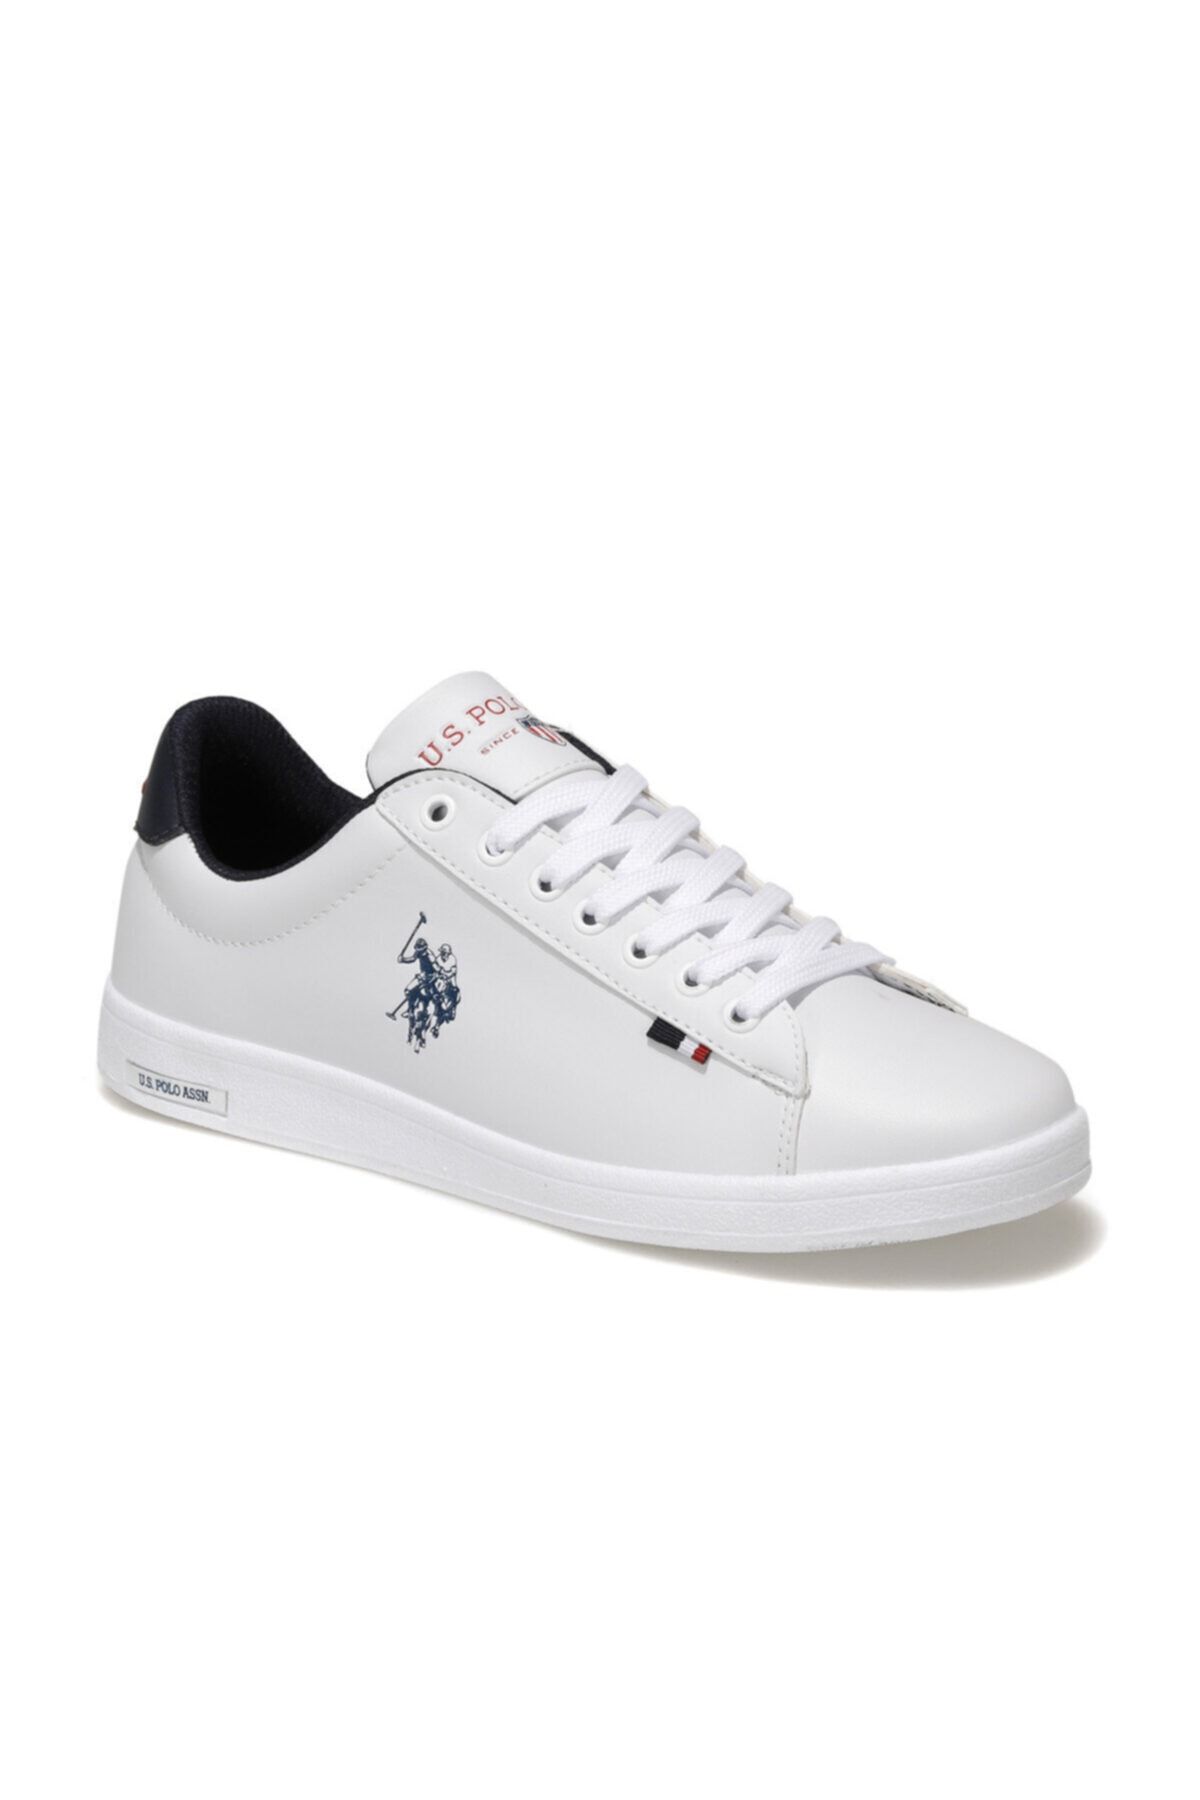 U.S. Polo Assn. FRANCO 1FX Beyaz Erkek Sneaker Ayakkabı 100910268